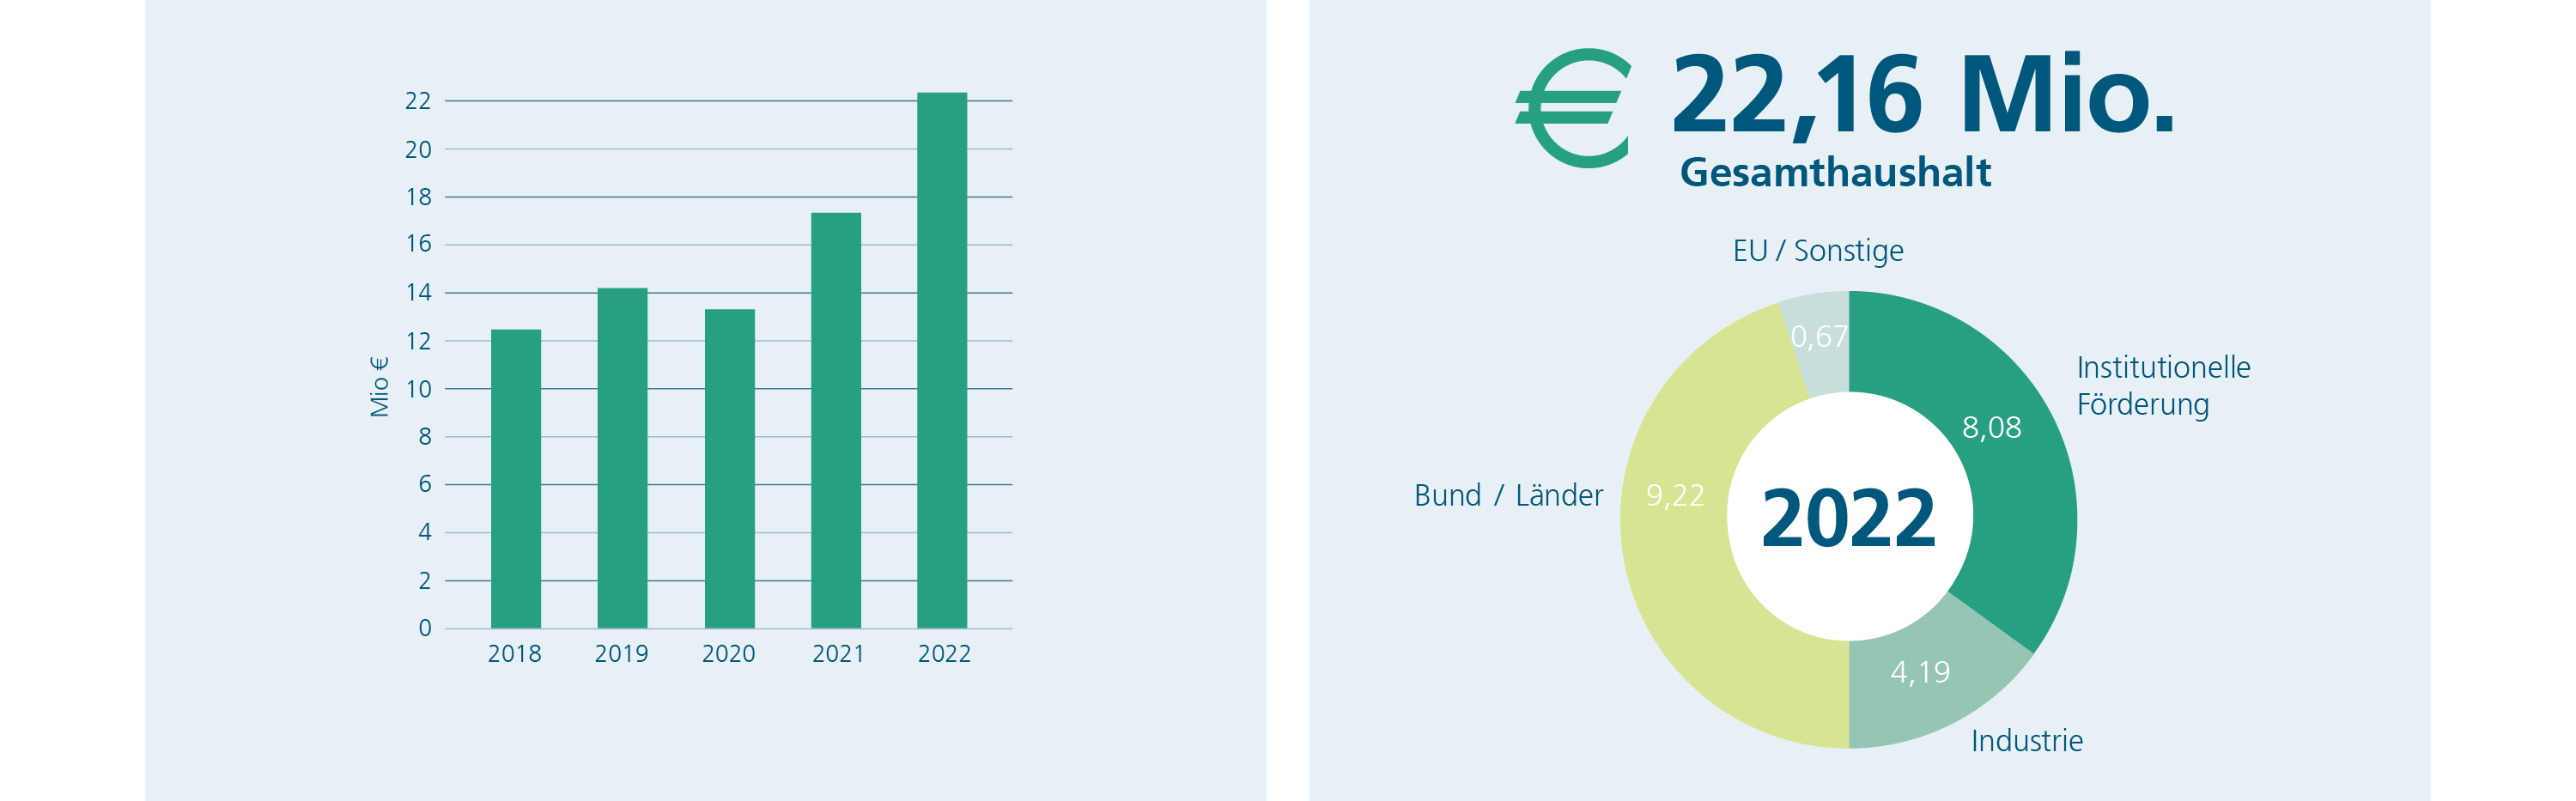 Entwicklung Gesamthaushalt des Fraunhofer IST 2018-2022